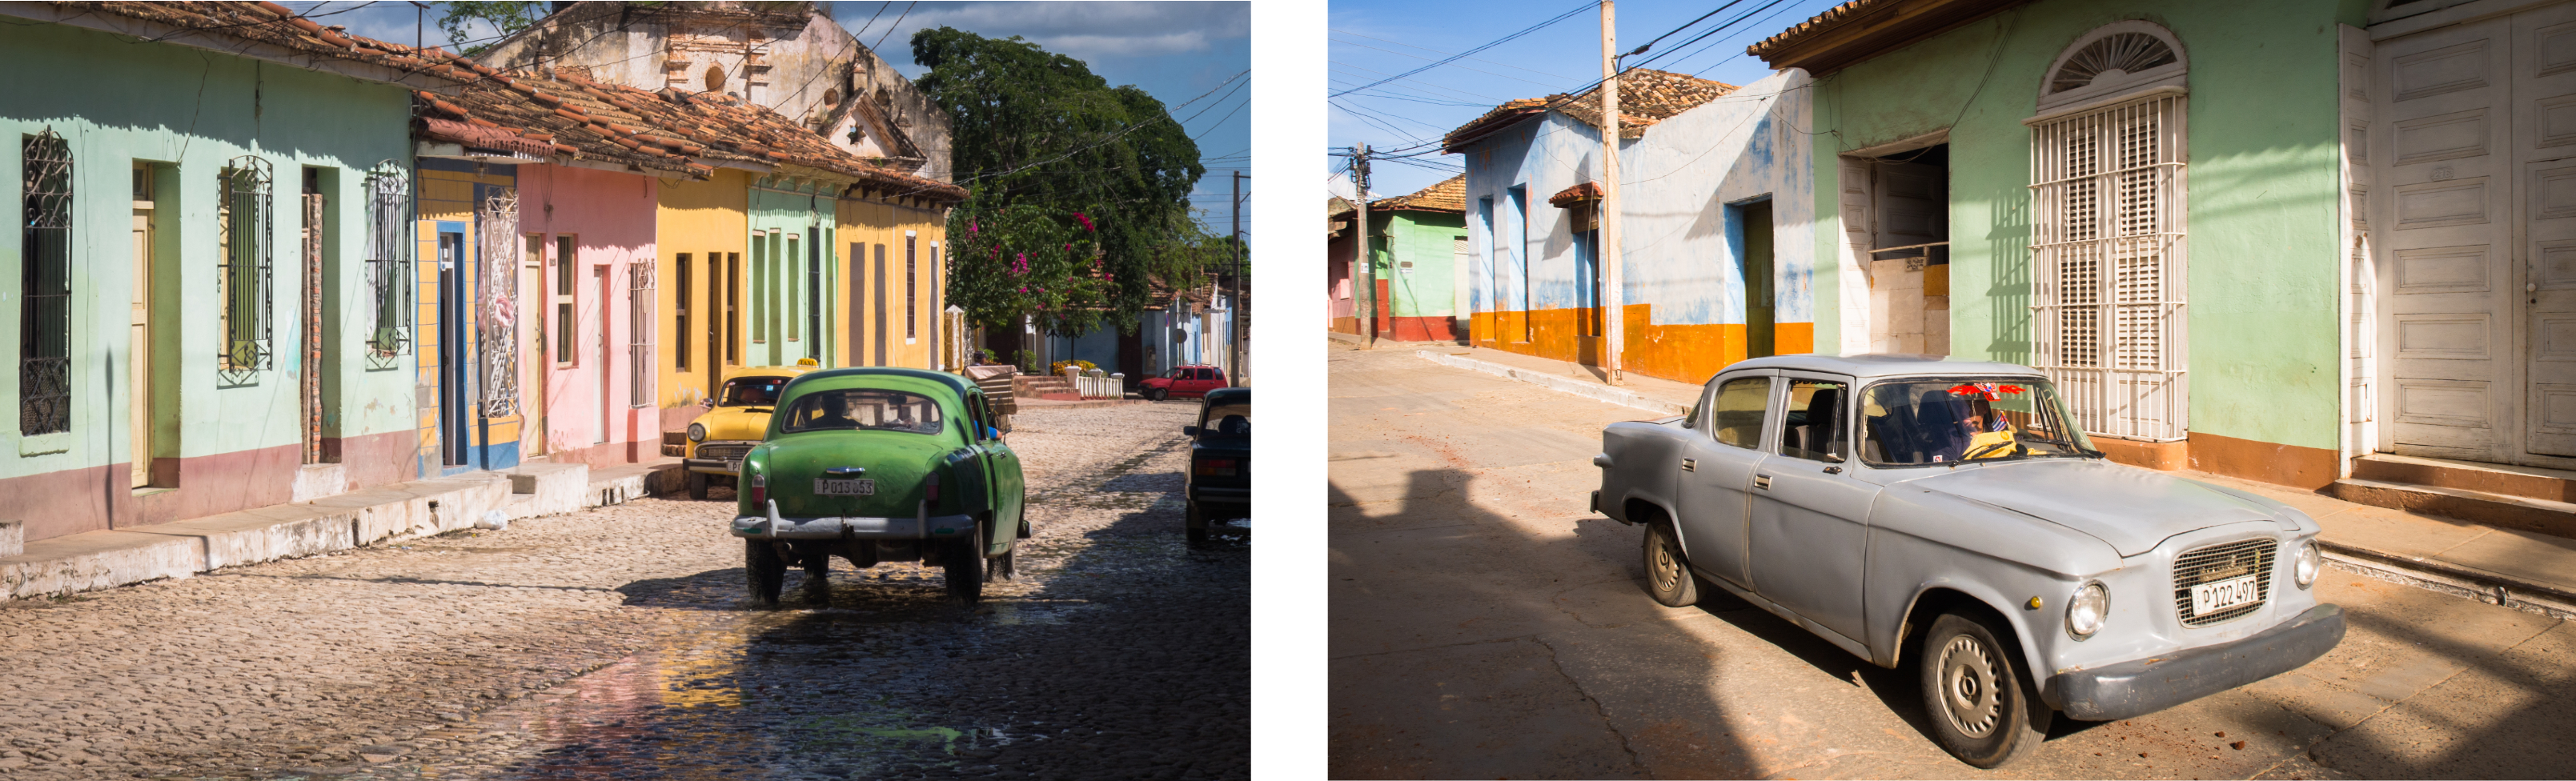 tourisme trinidad cuba-trinidad cuba images-cuba vieilles voitures